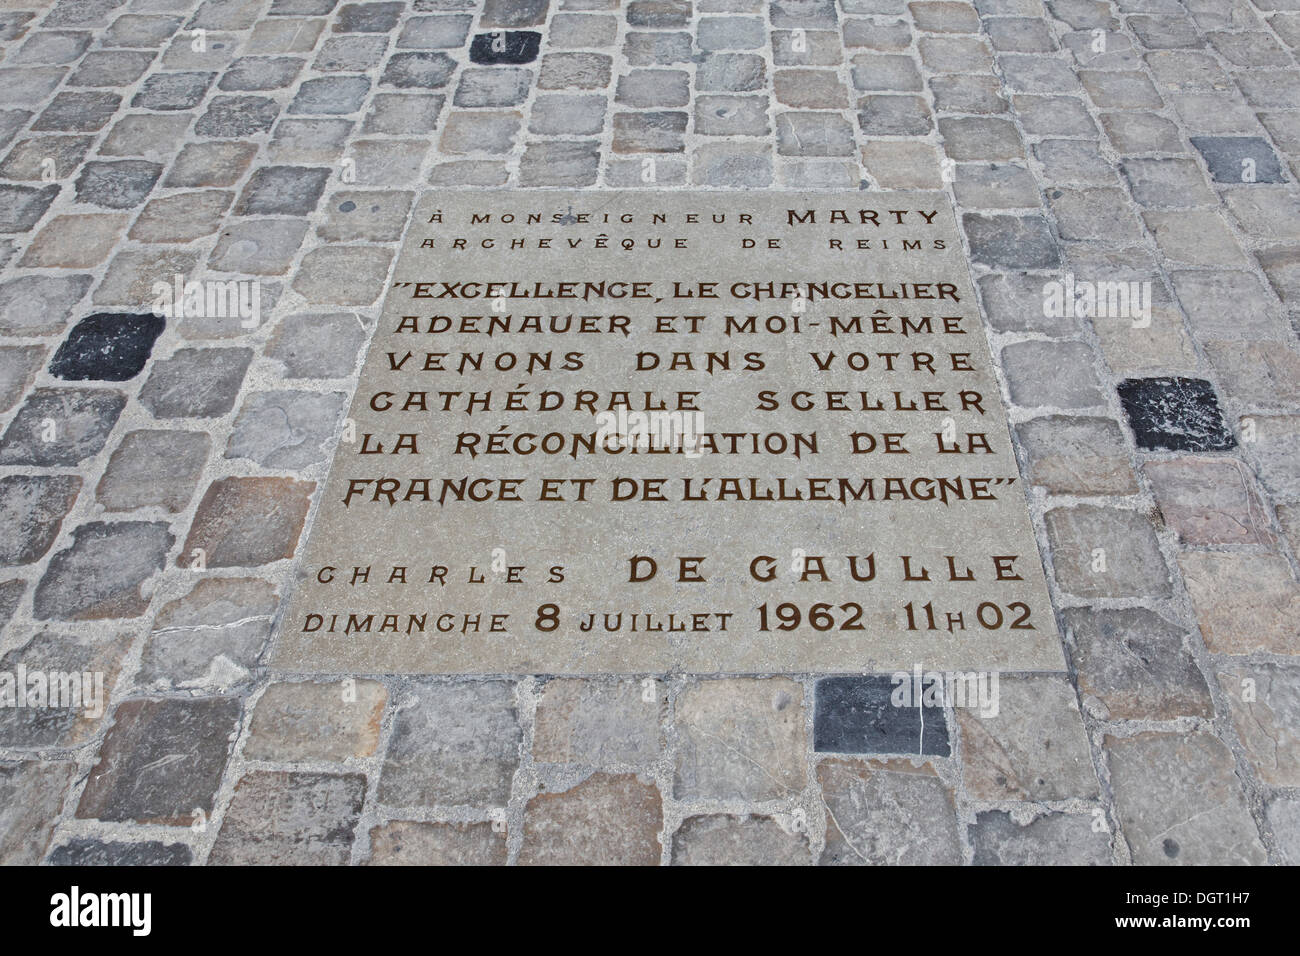 Cathédrale Notre-Dame, Reims, pierre en face de l'église pour la visite d'Adenauer et de Gaulle le 8 juillet 1962 Banque D'Images